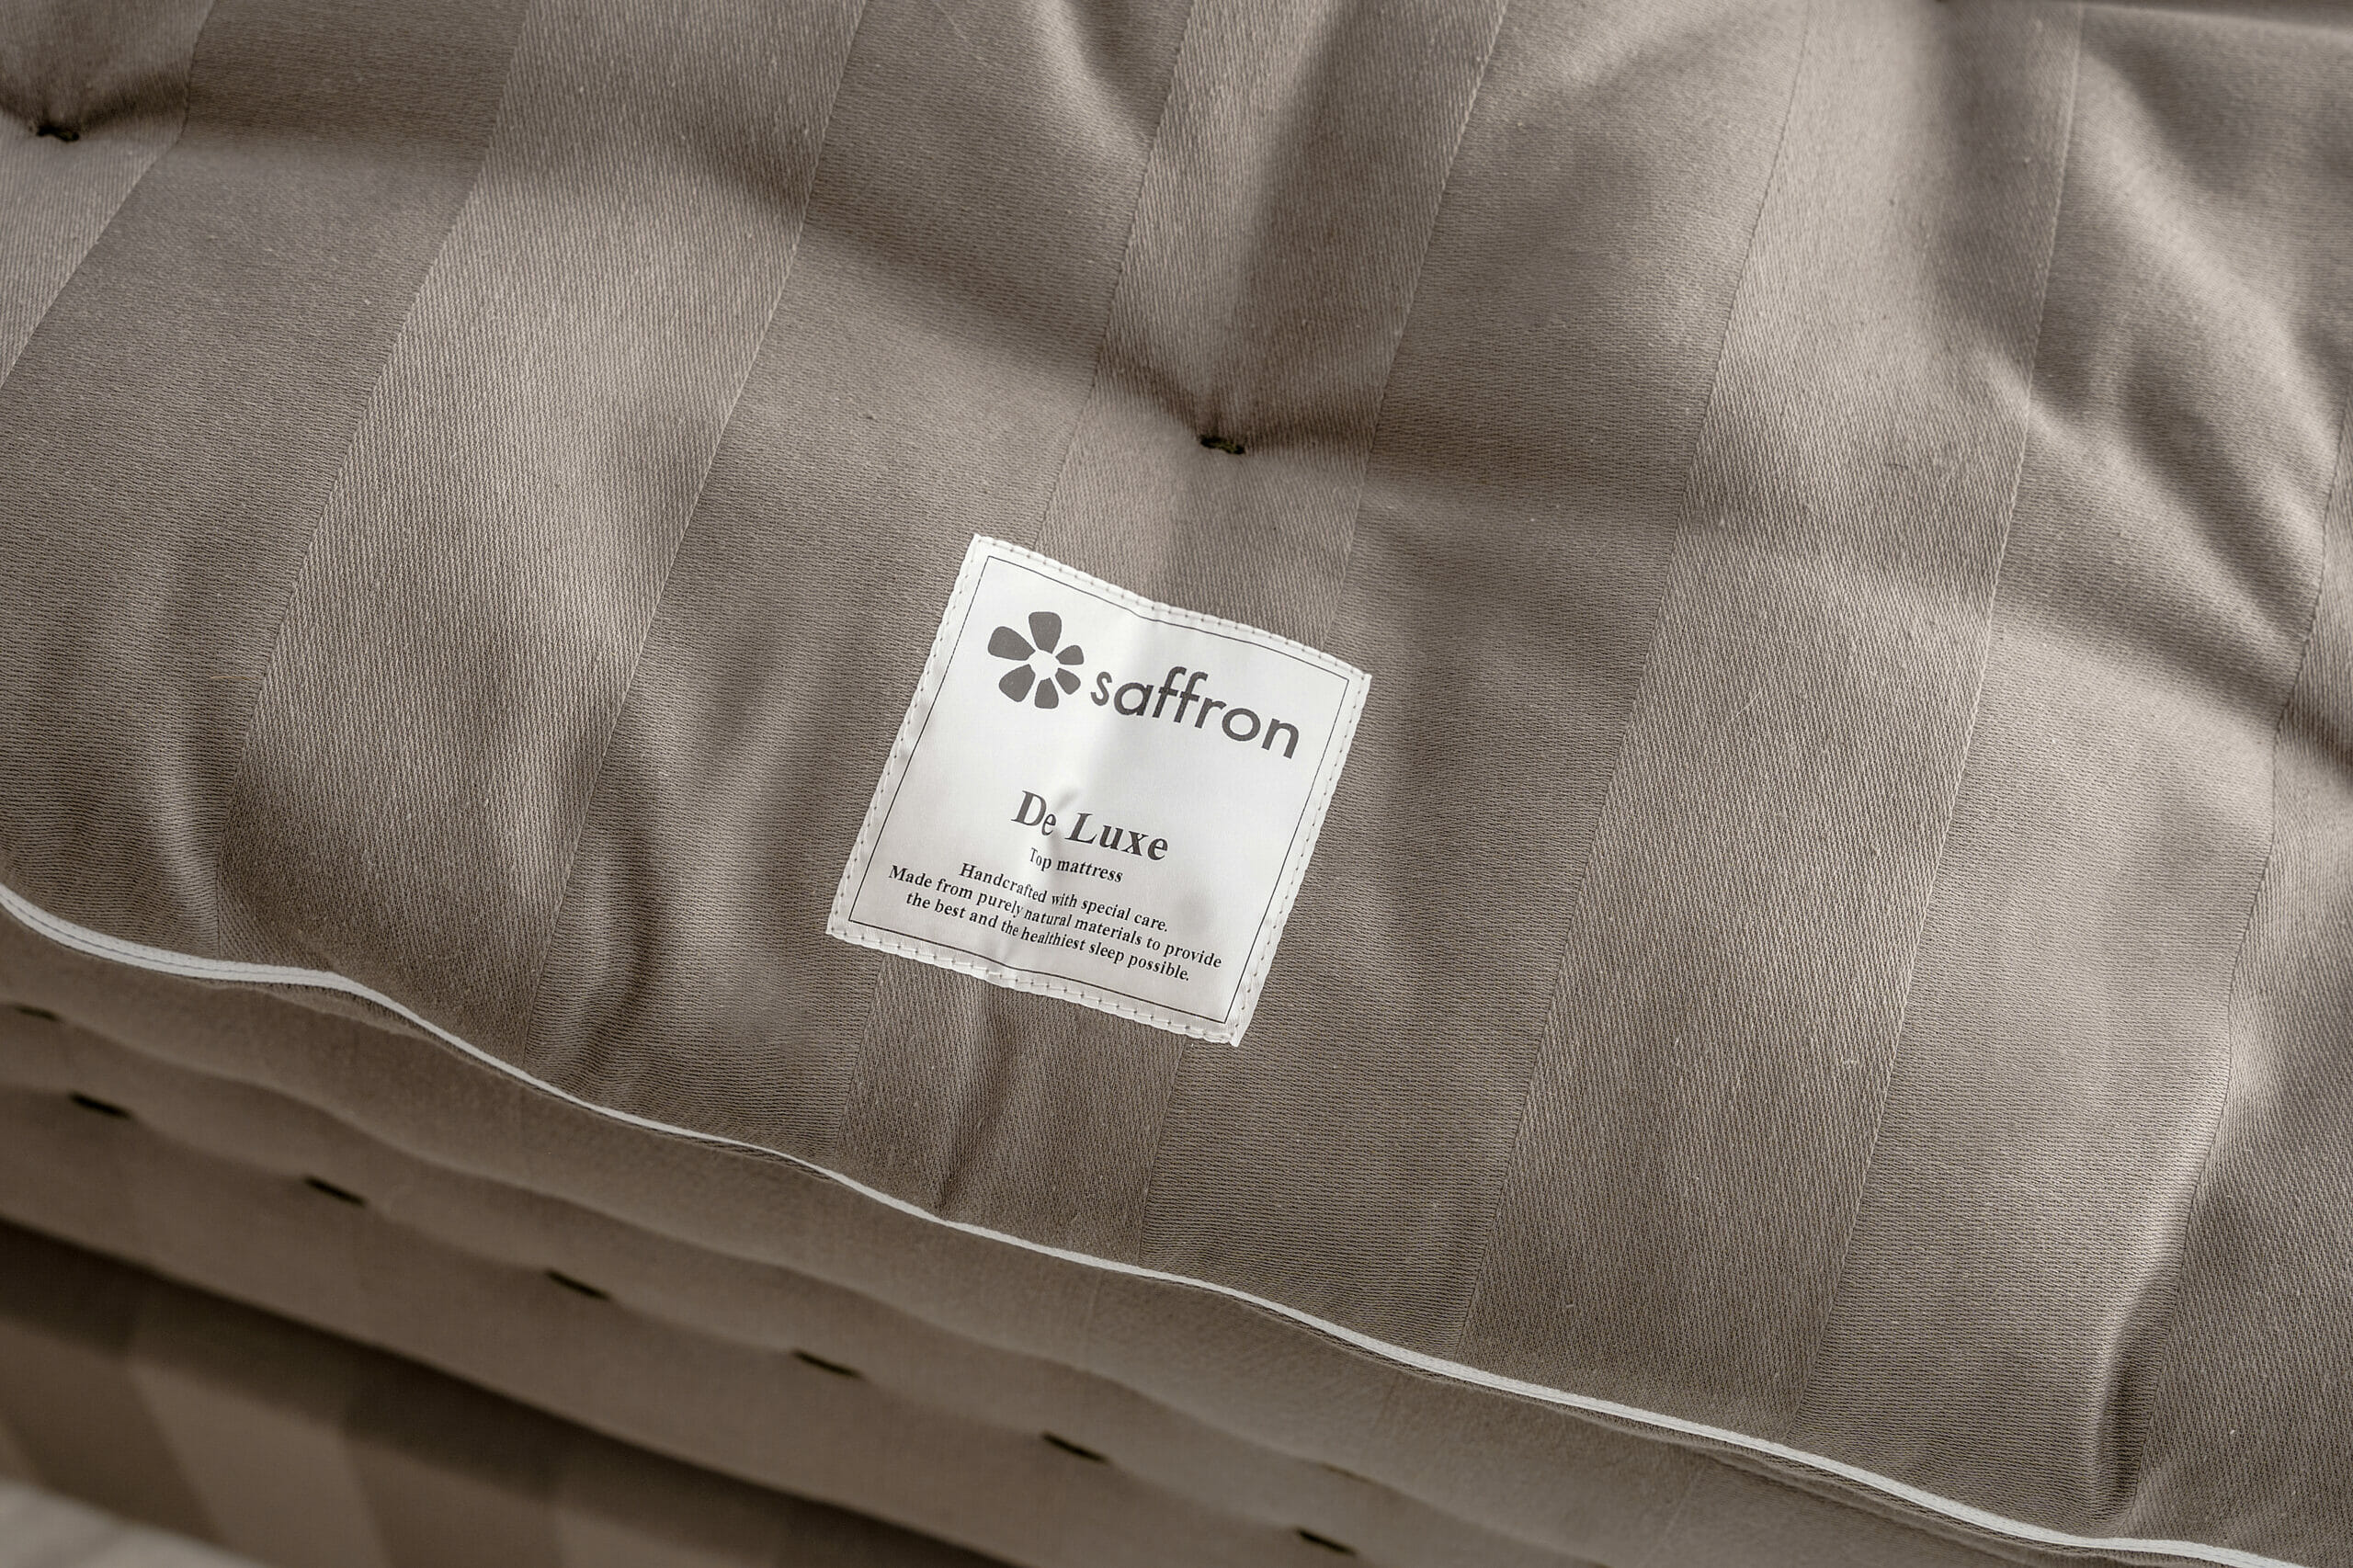 Saffron senge - De luxe topmadras (detaljer)